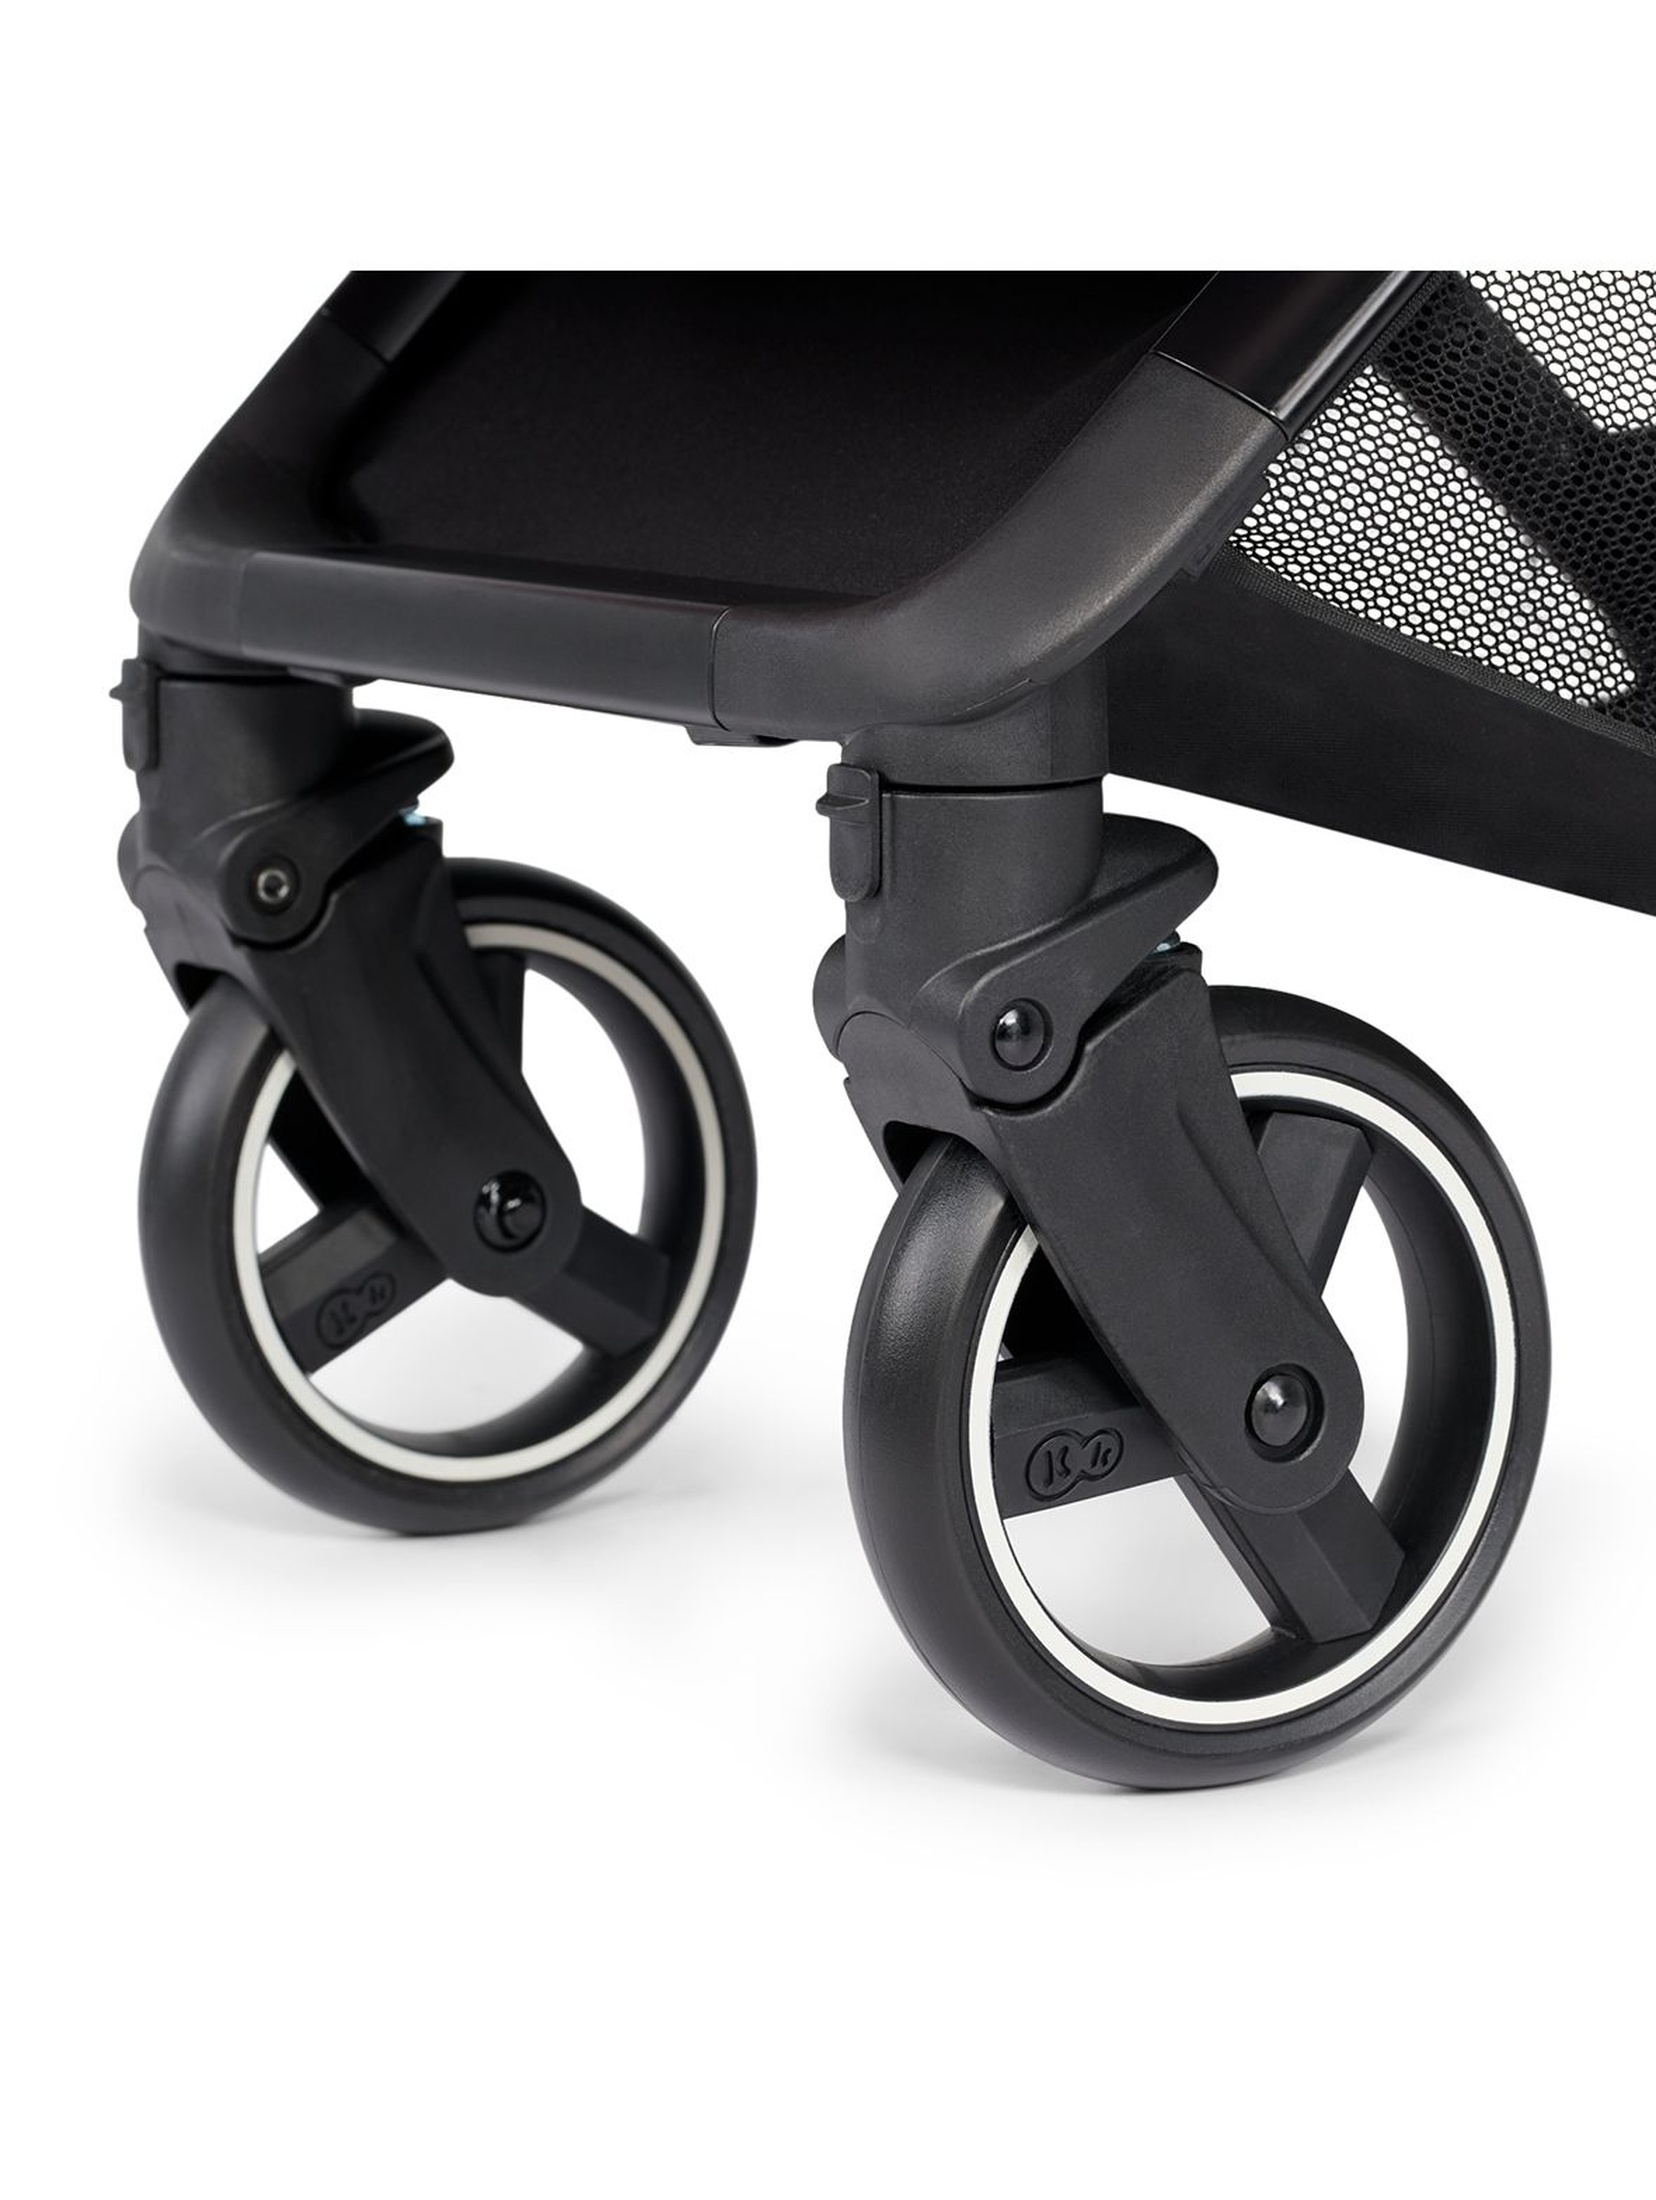 Kinderkraft wózek spacerowy NUBI - różowy do 15kg